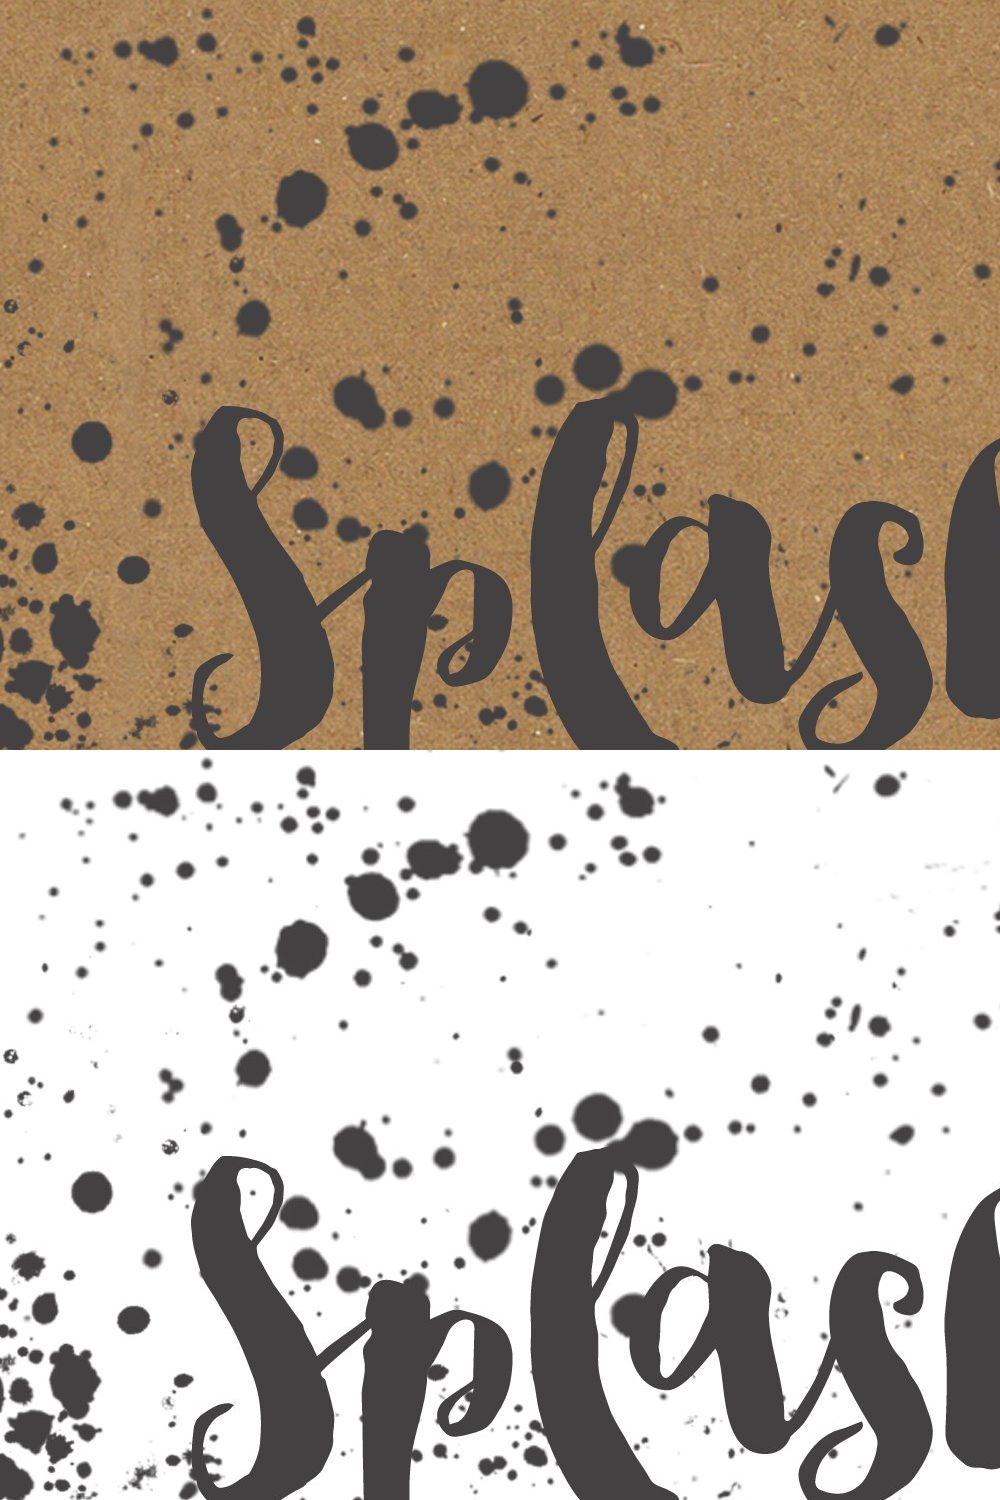 Grunge paint splatter brush set pinterest preview image.